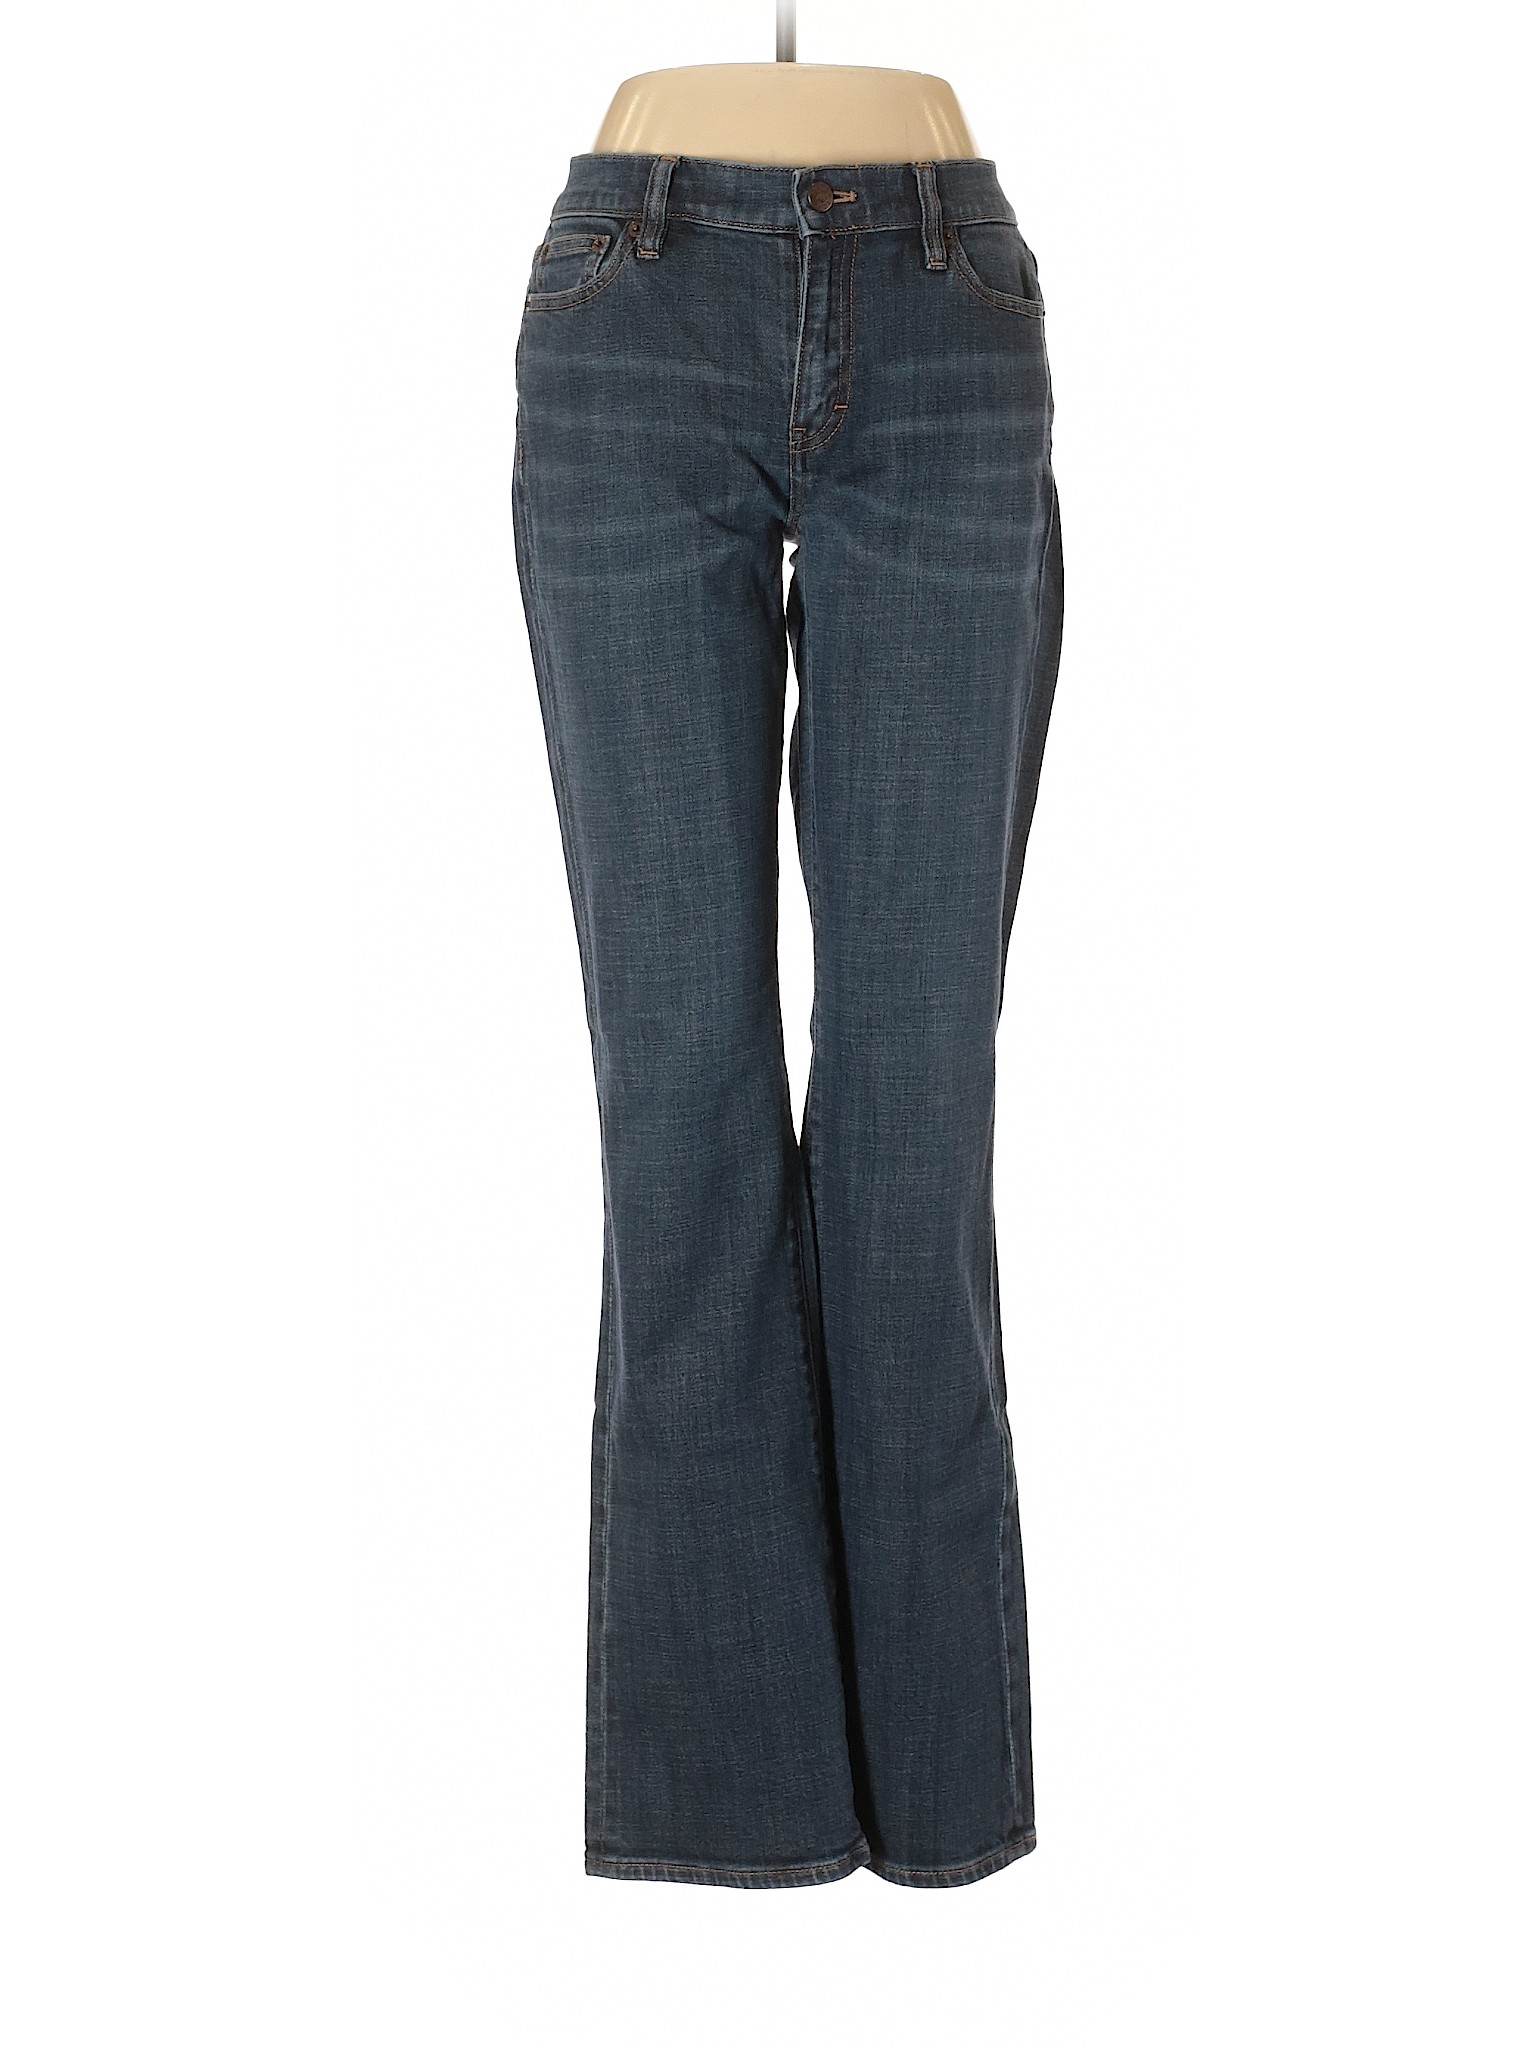 J.Crew Factory Store Women Blue Jeans 29W | eBay